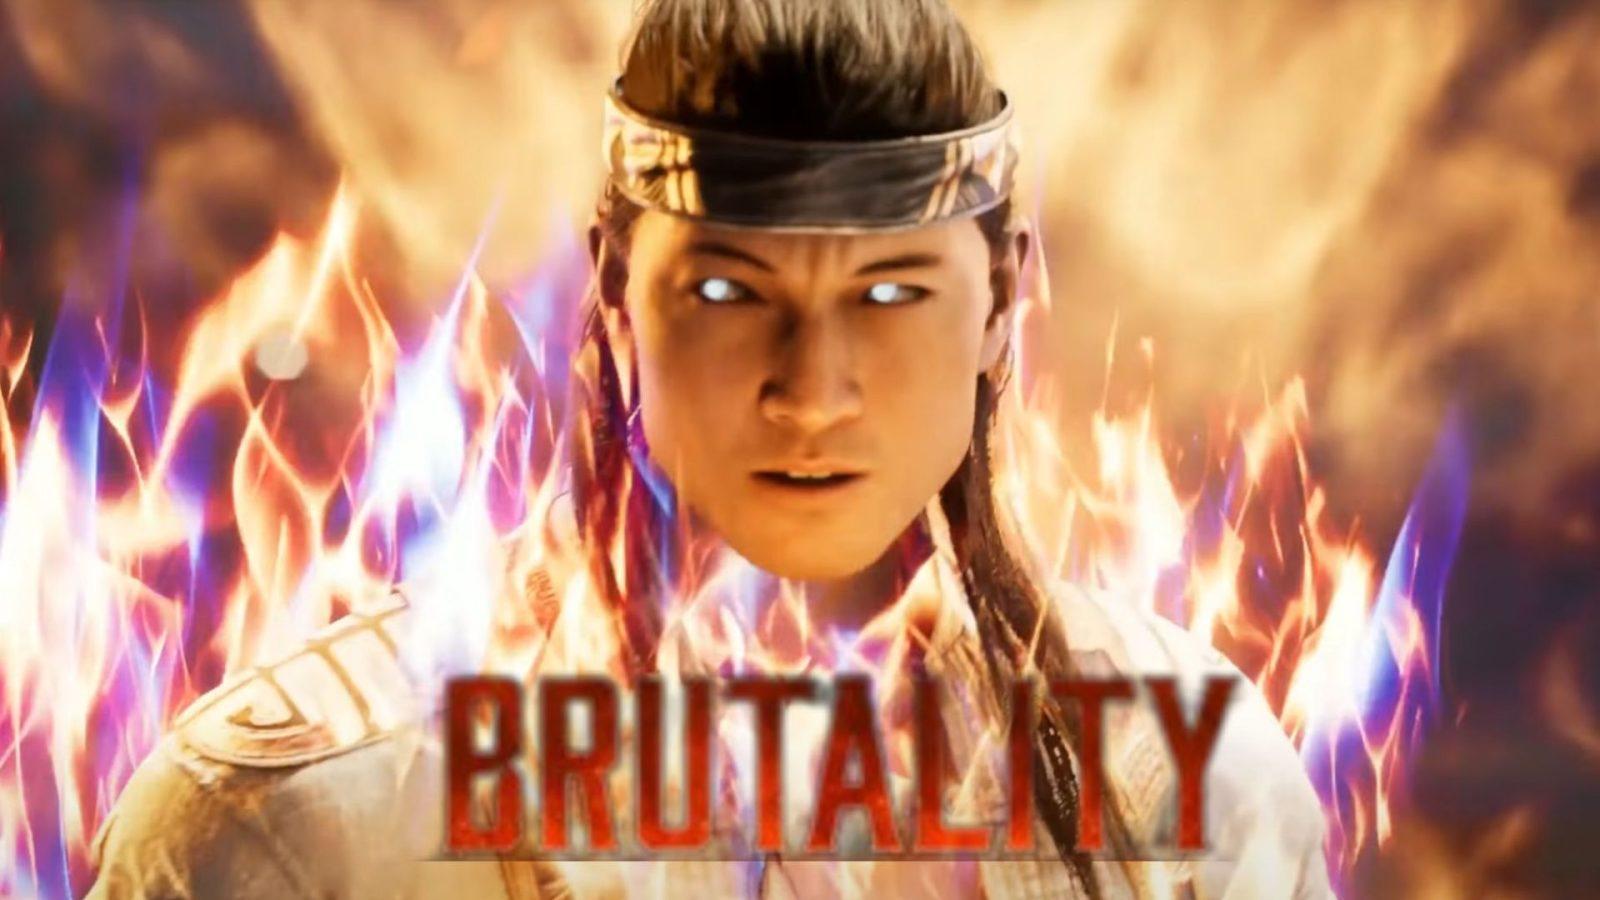 Mortal Kombat 1 - Liu Kang Fatality 